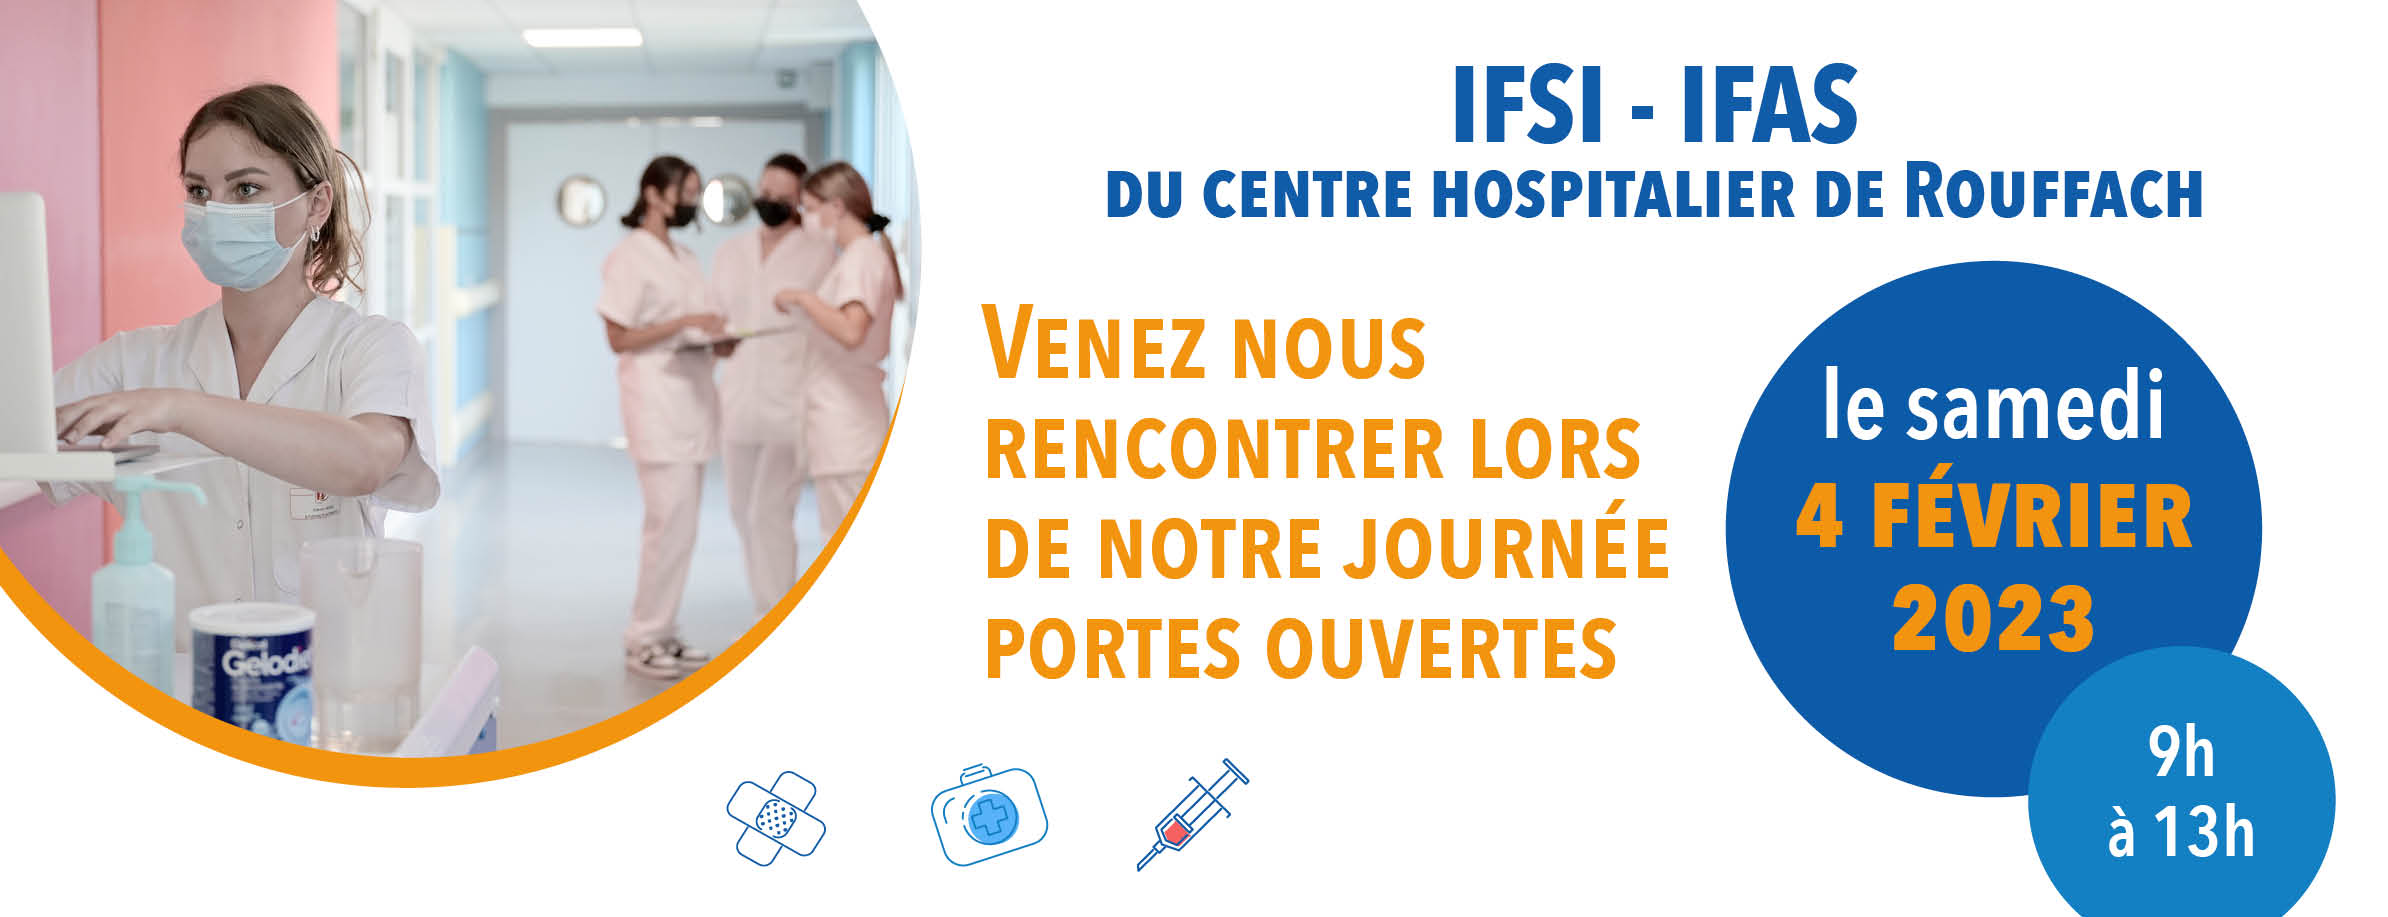 IFSI - IFAS : centre hospitalier Rouffach - Journée portes ouvertes